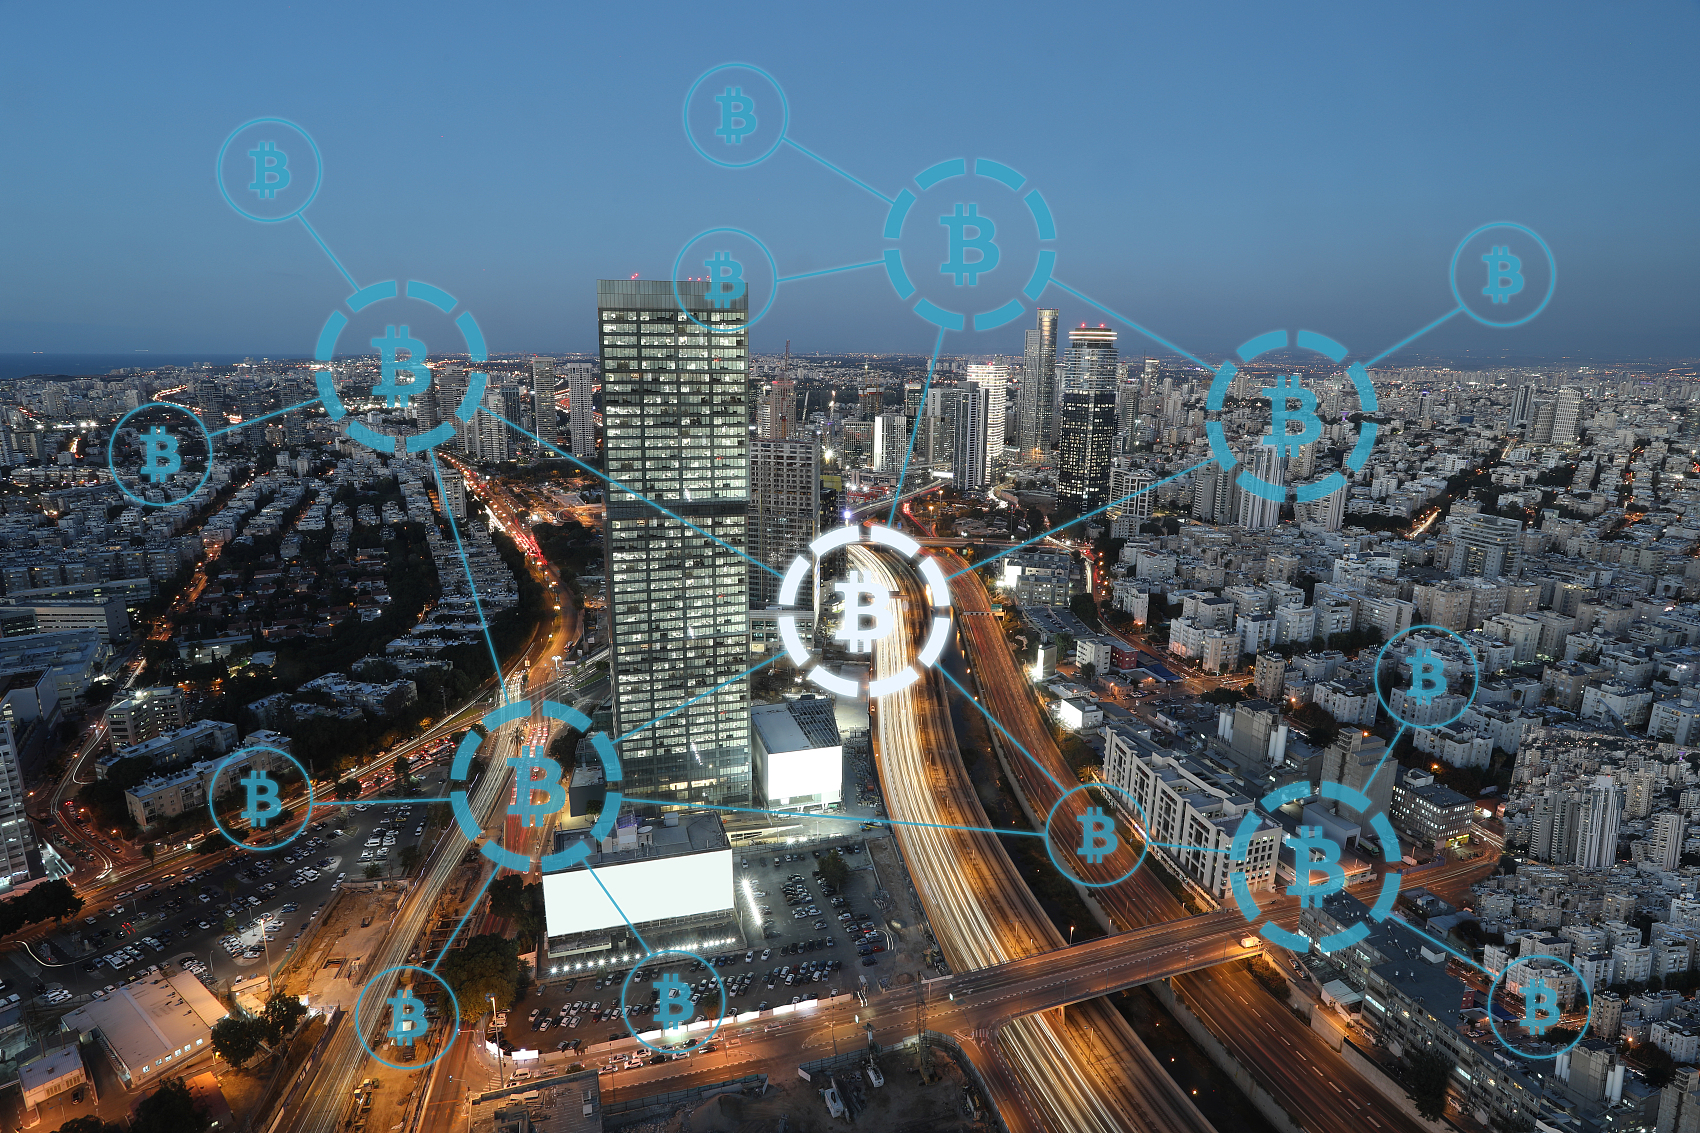 4种常用的智慧城市技术